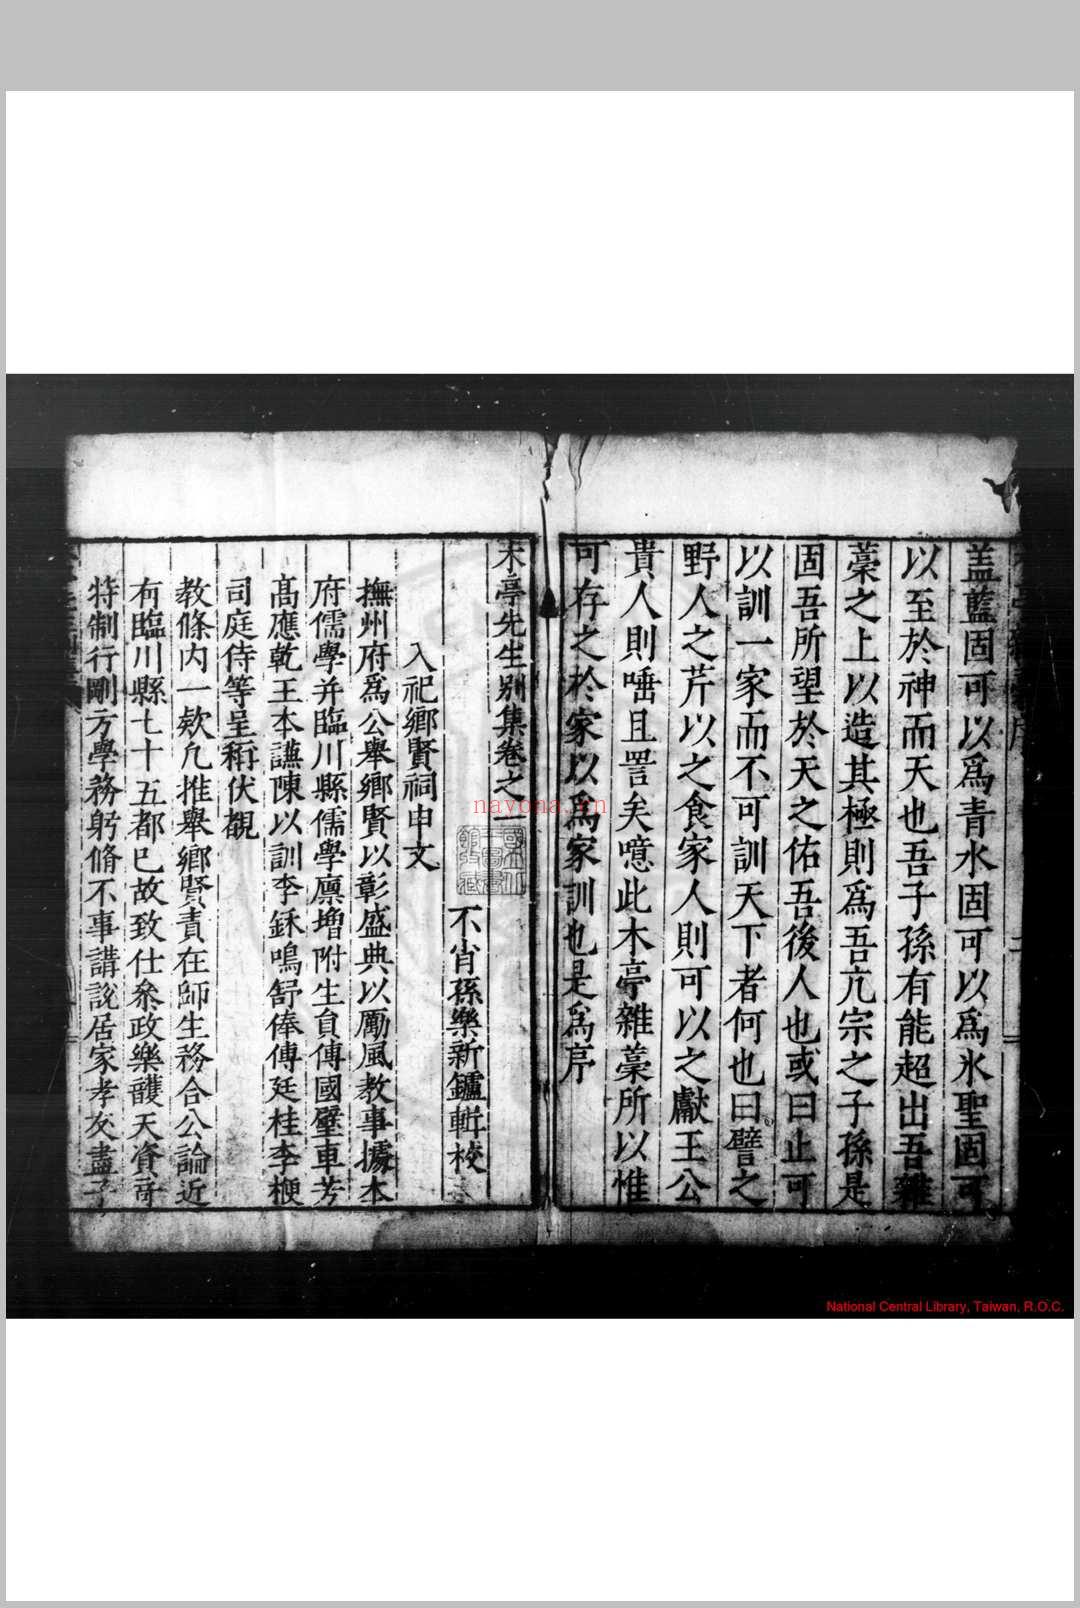 木亭杂稿 (明)乐頀撰 明嘉靖四十一年(1562)临川乐氏刊本